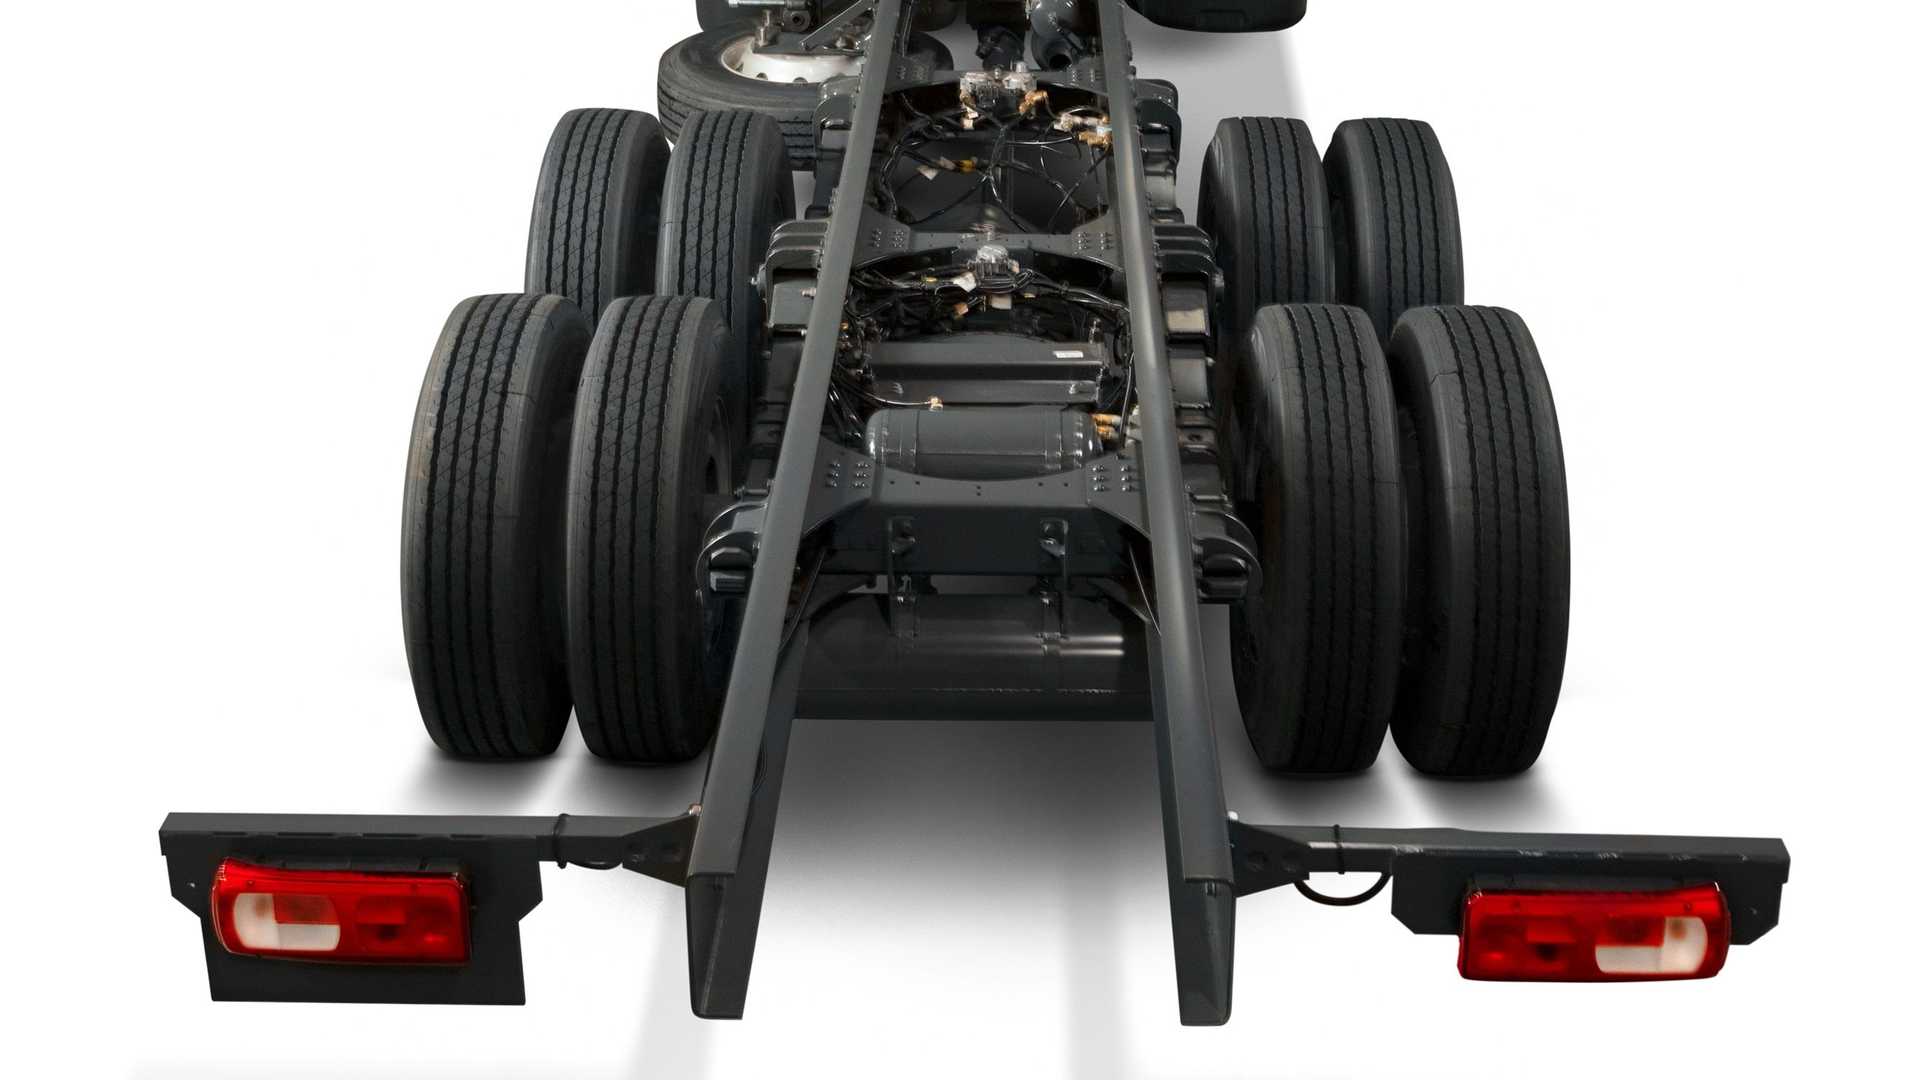 DAF apresenta novo DAF CF com motor de 7 litros e potências de 280 e 300 cv  - Blog do Caminhoneiro